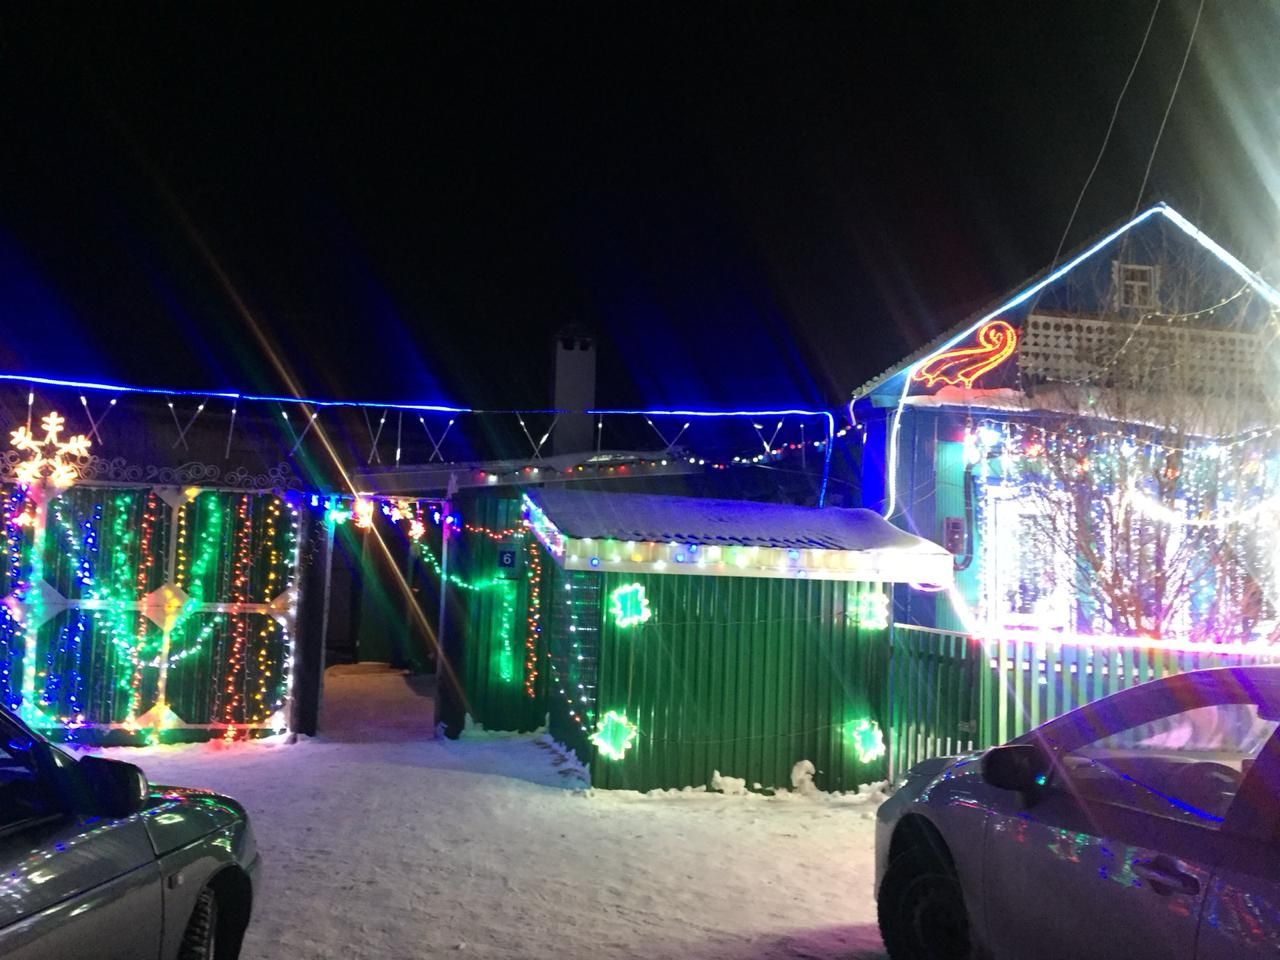 Дом Ильдуса  Зиннатуллина, проживающего в селе Кукеево, весь сверкает  новогодними огнями